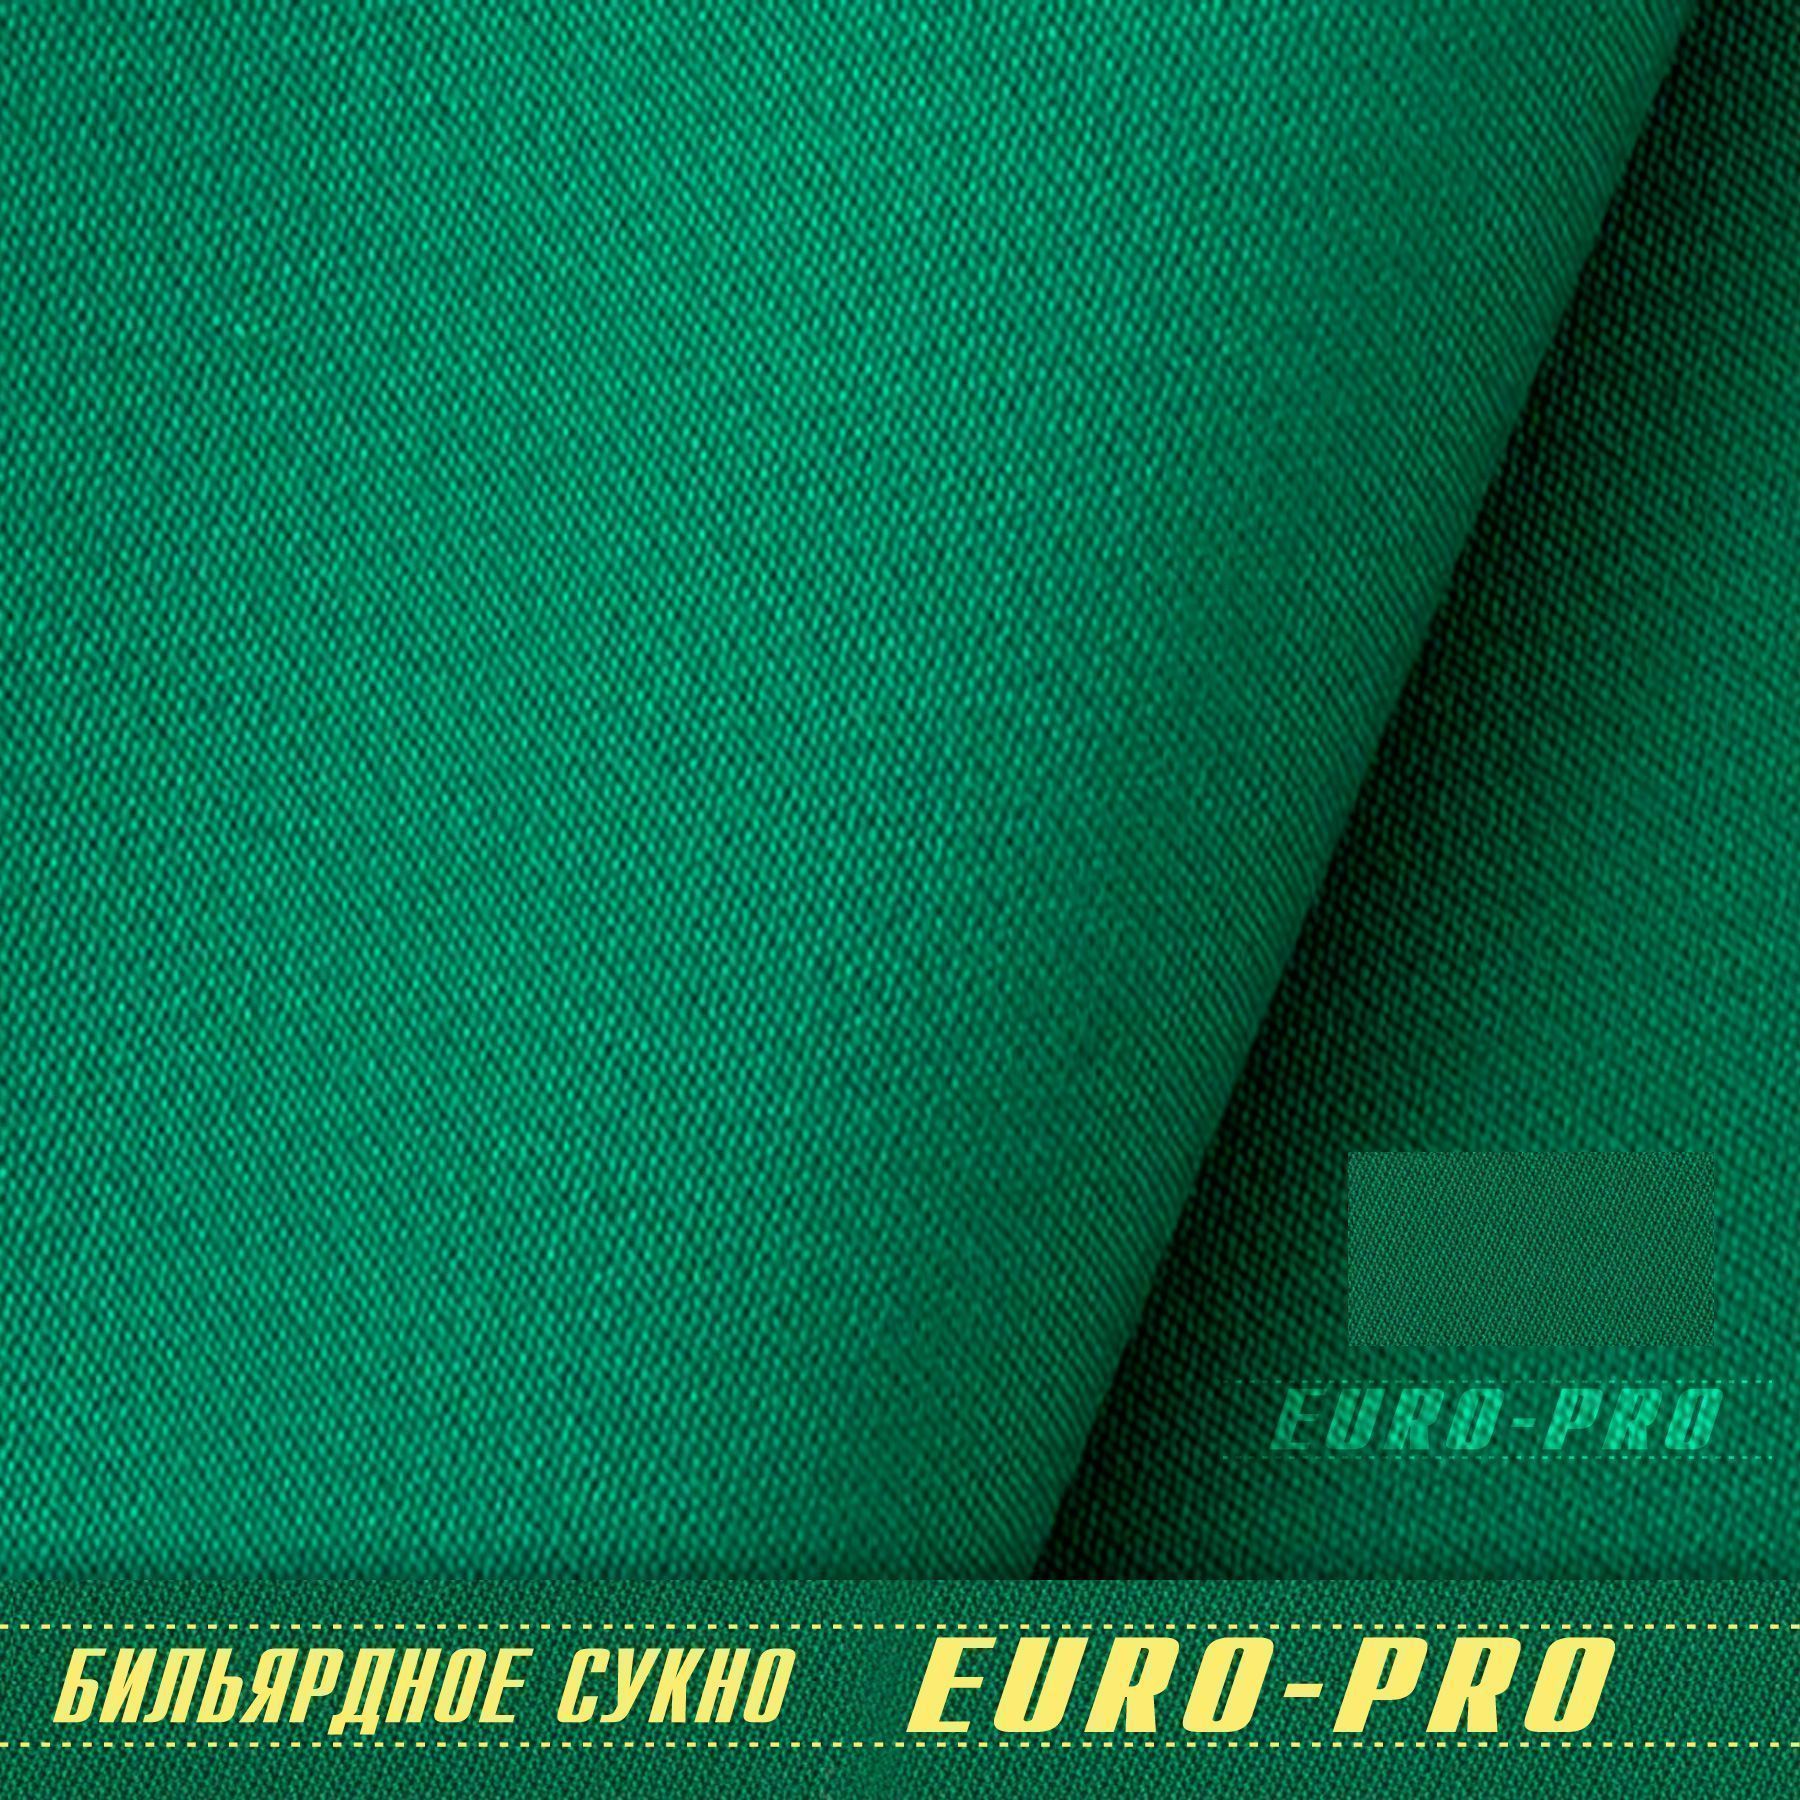 Сукно "Euro Pro 30" ш1.98м Yellow green